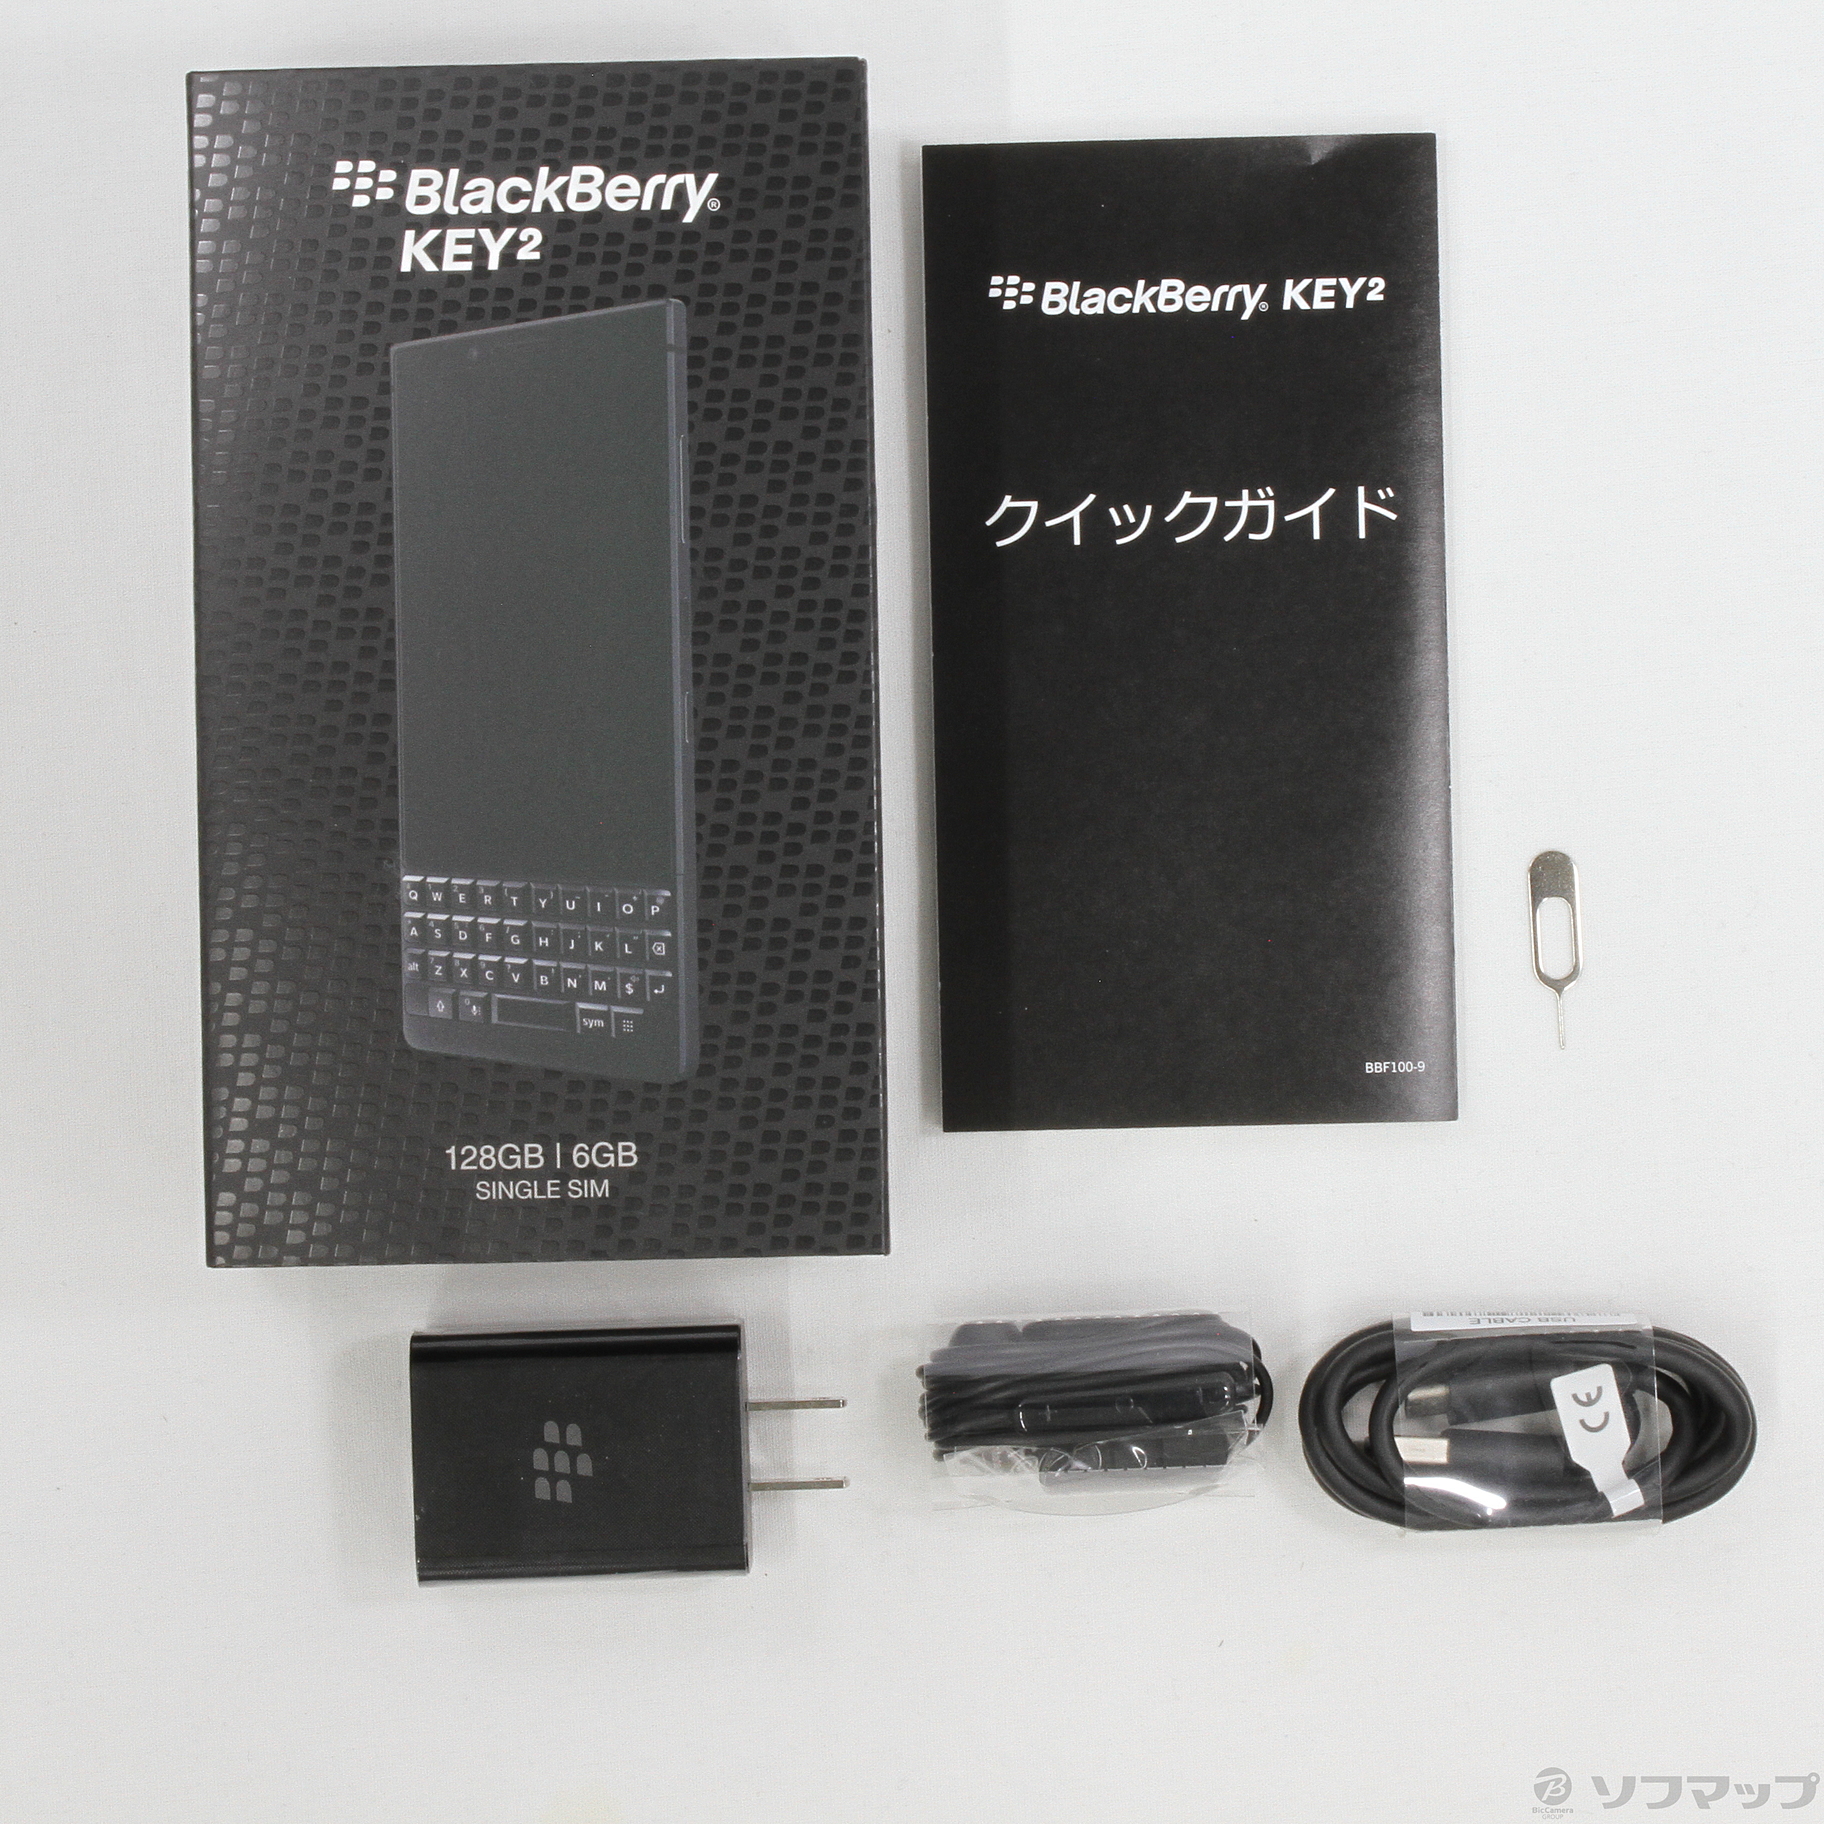 中古】BlackBerry KEY2 128GB ブラック BBF1009 SIMフリー ◇02/13(日 ...